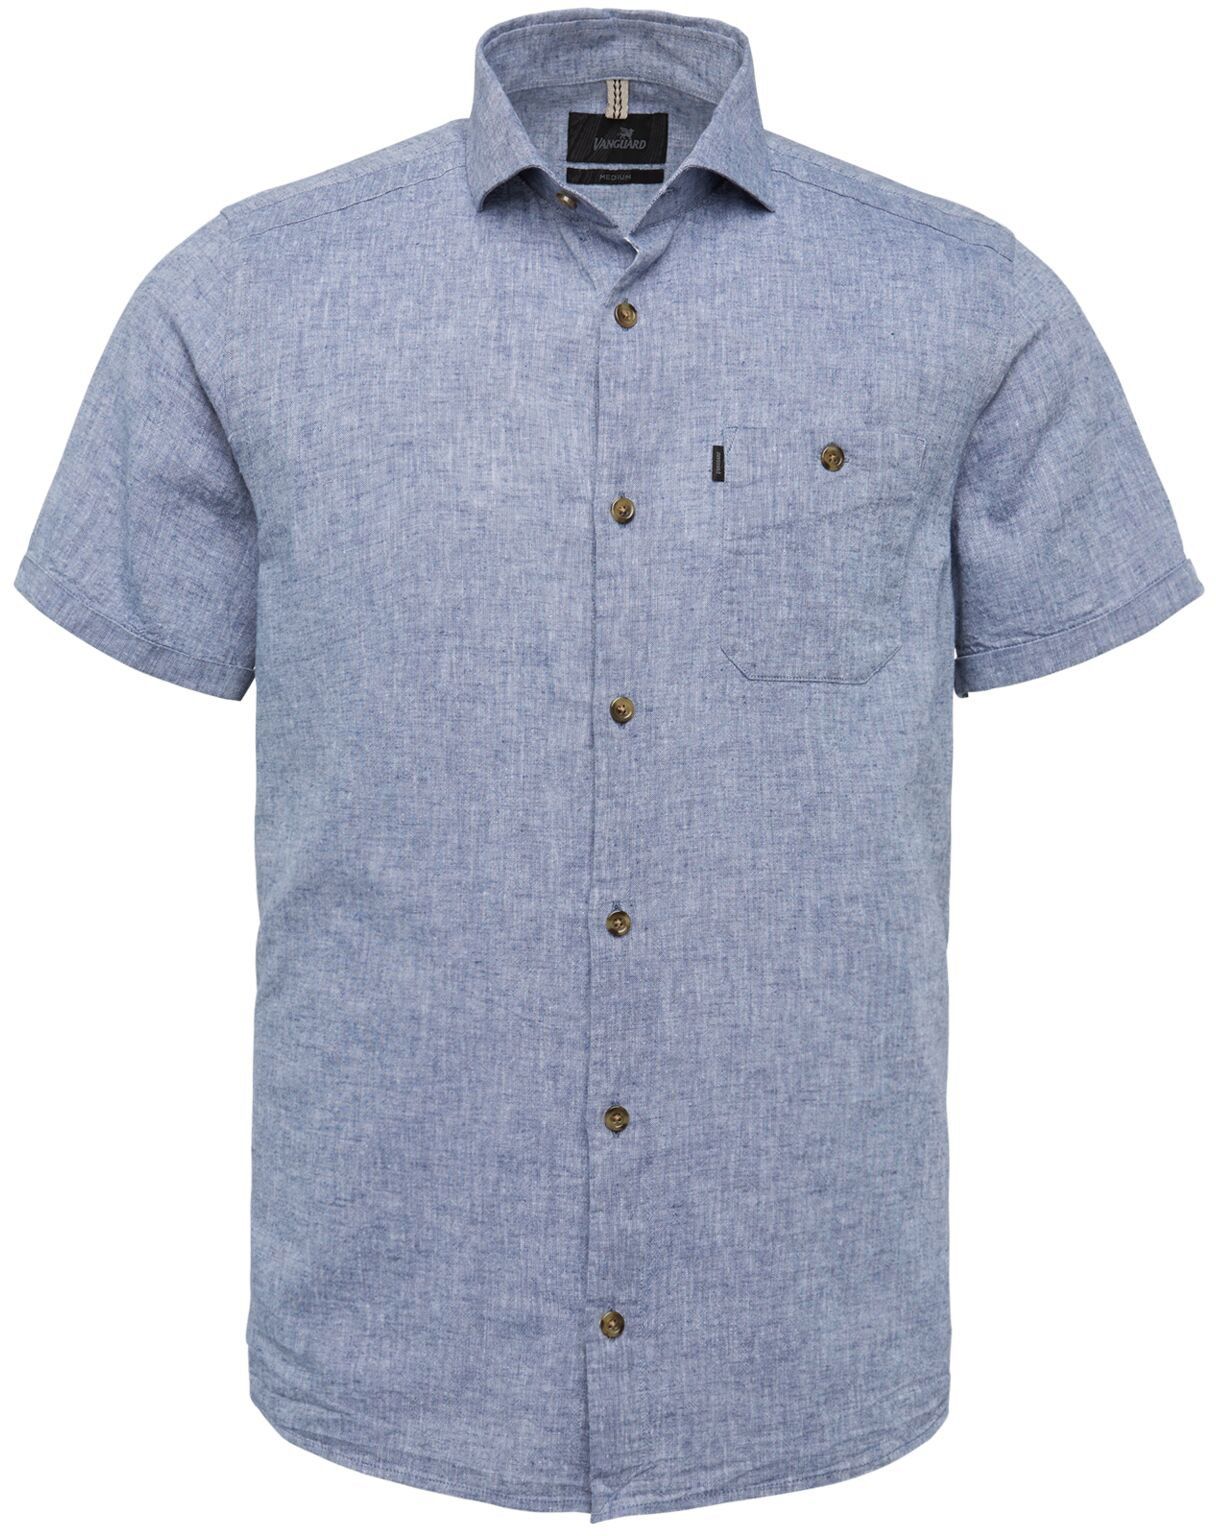 Vanguard Linen Shirt SS Blend Blue size 3XL